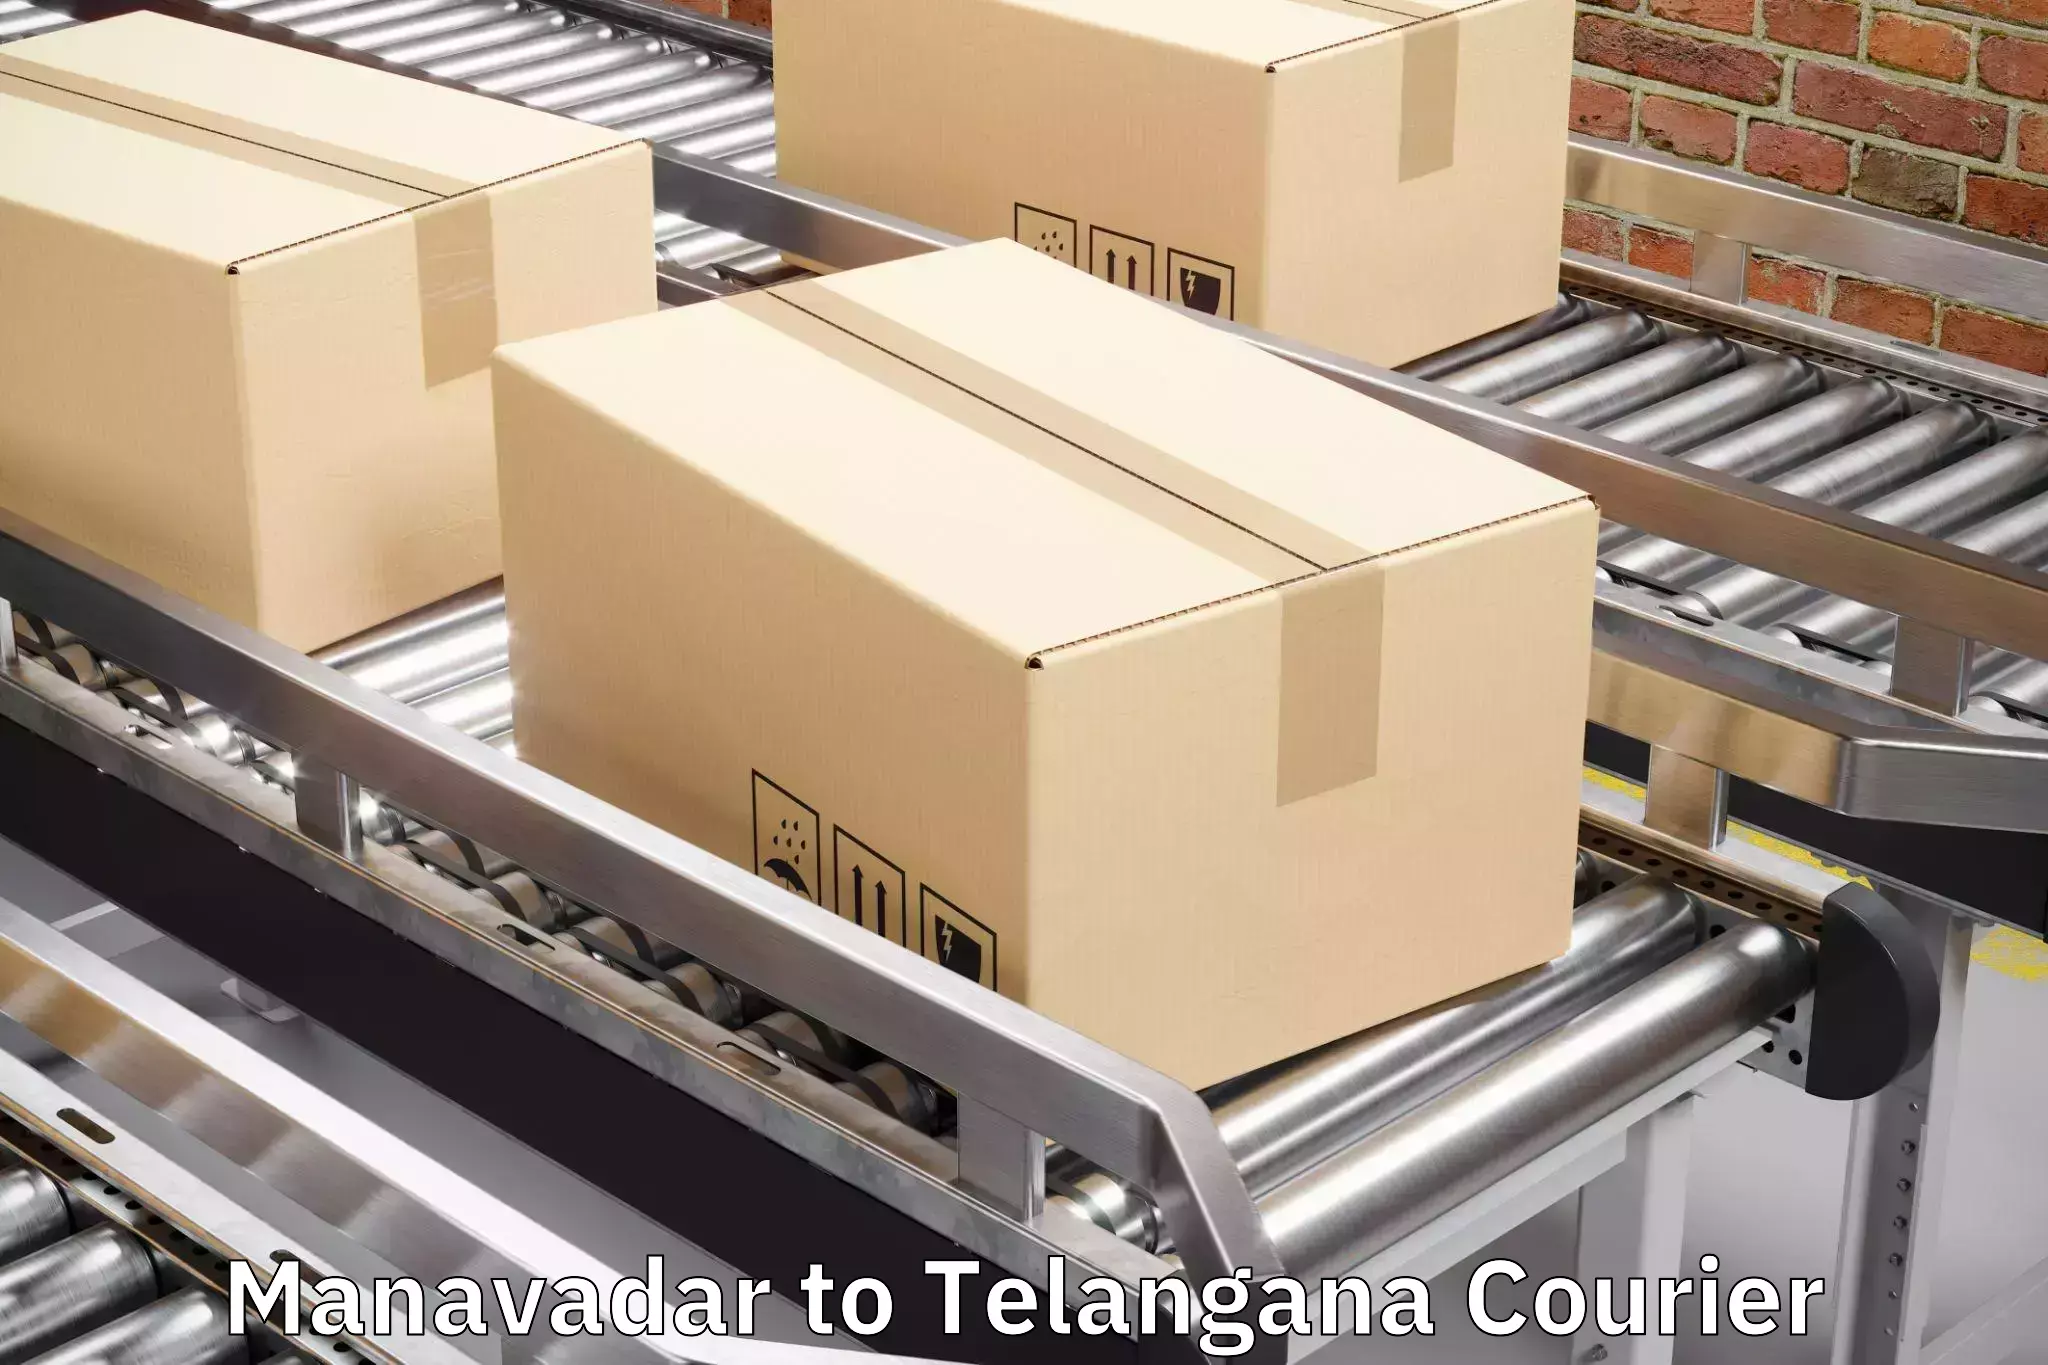 Baggage transport updates Manavadar to Karimnagar